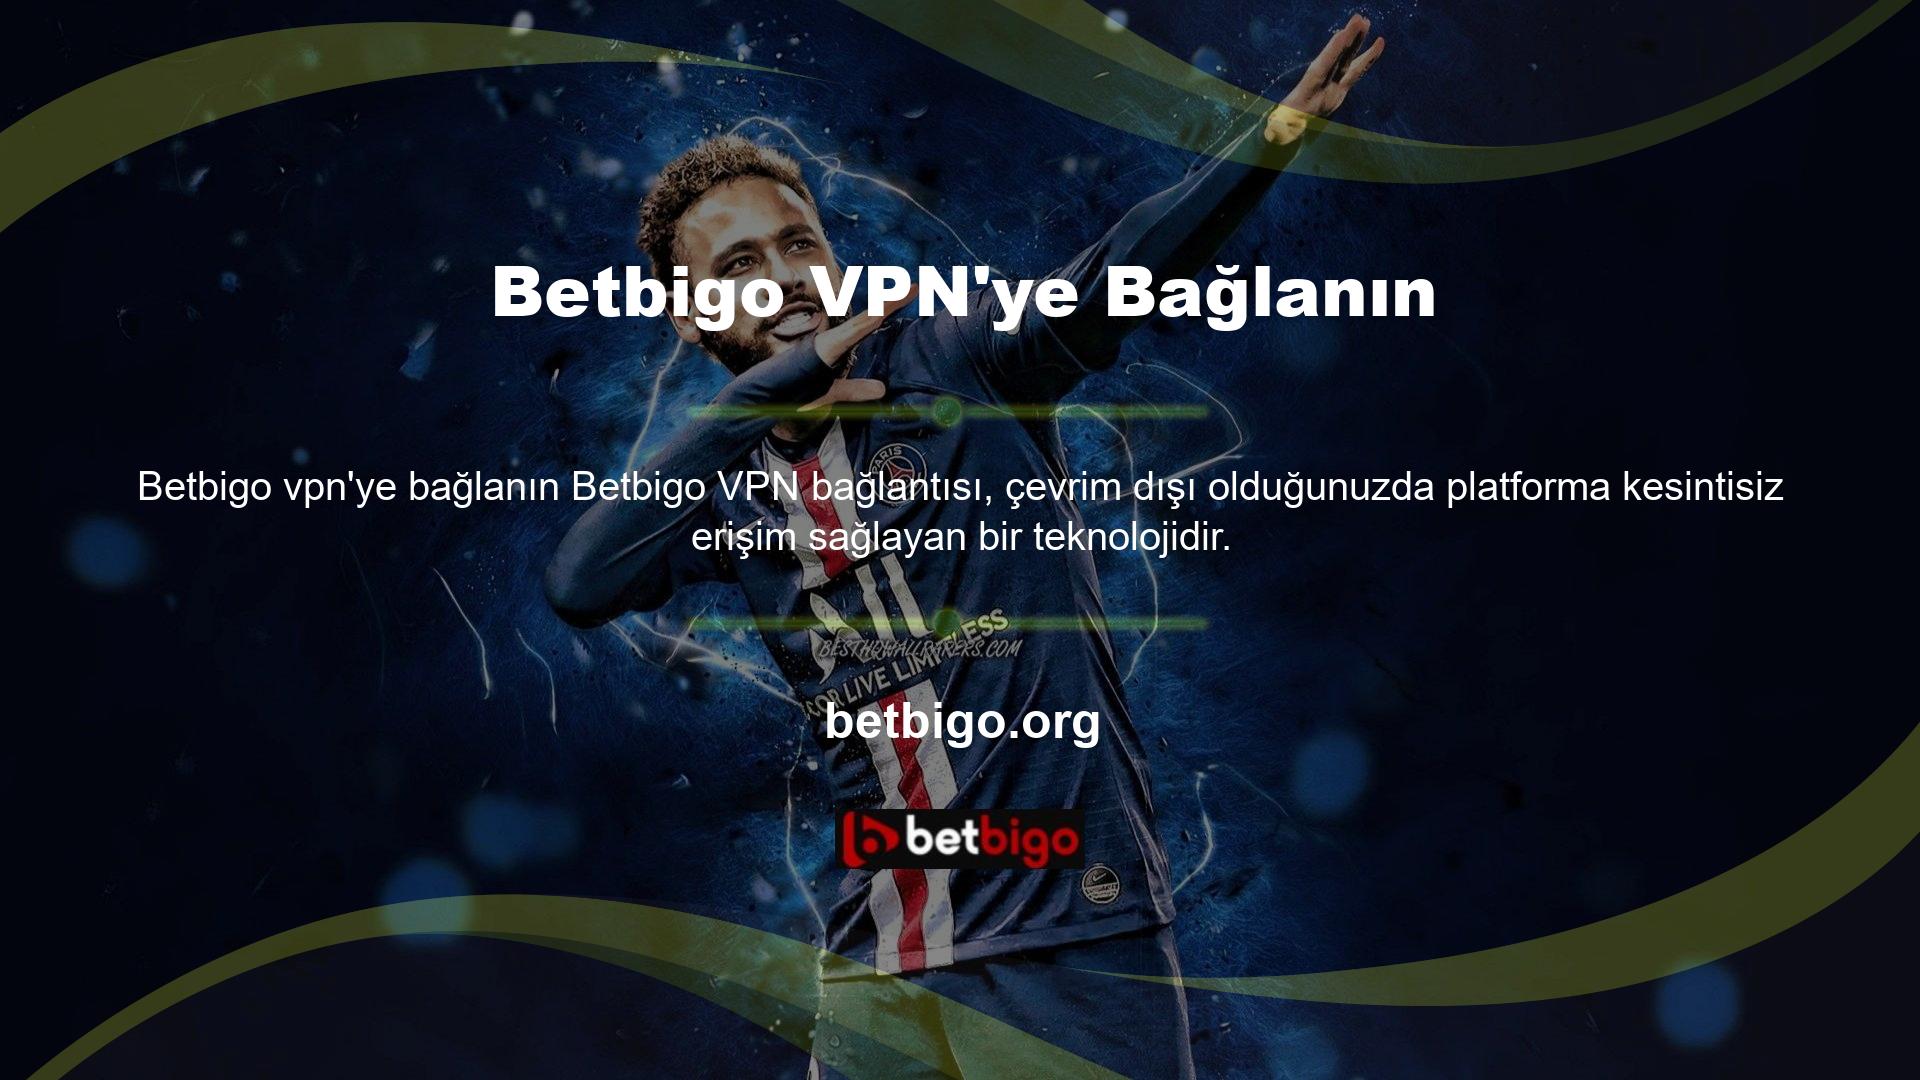 Casino ve oyun kataloğunda Betbigo adı altında faaliyet göstermek üzere Türkiye'de verilen lisansın ülkemizde geçerliliği bulunmamaktadır